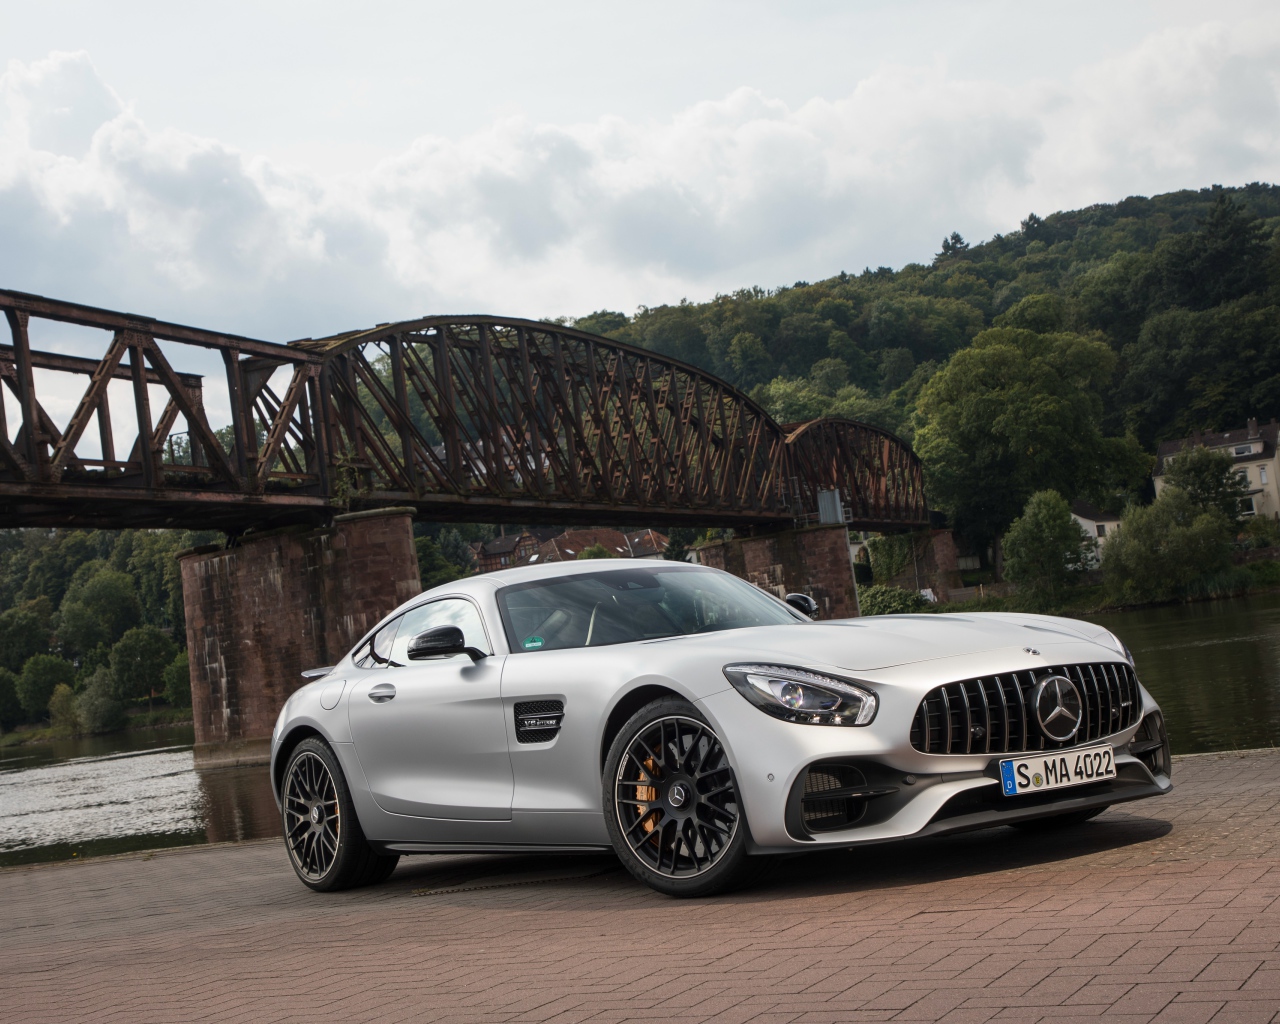 Серебристый автомобиль Mercedes-AMG GT на фоне моста